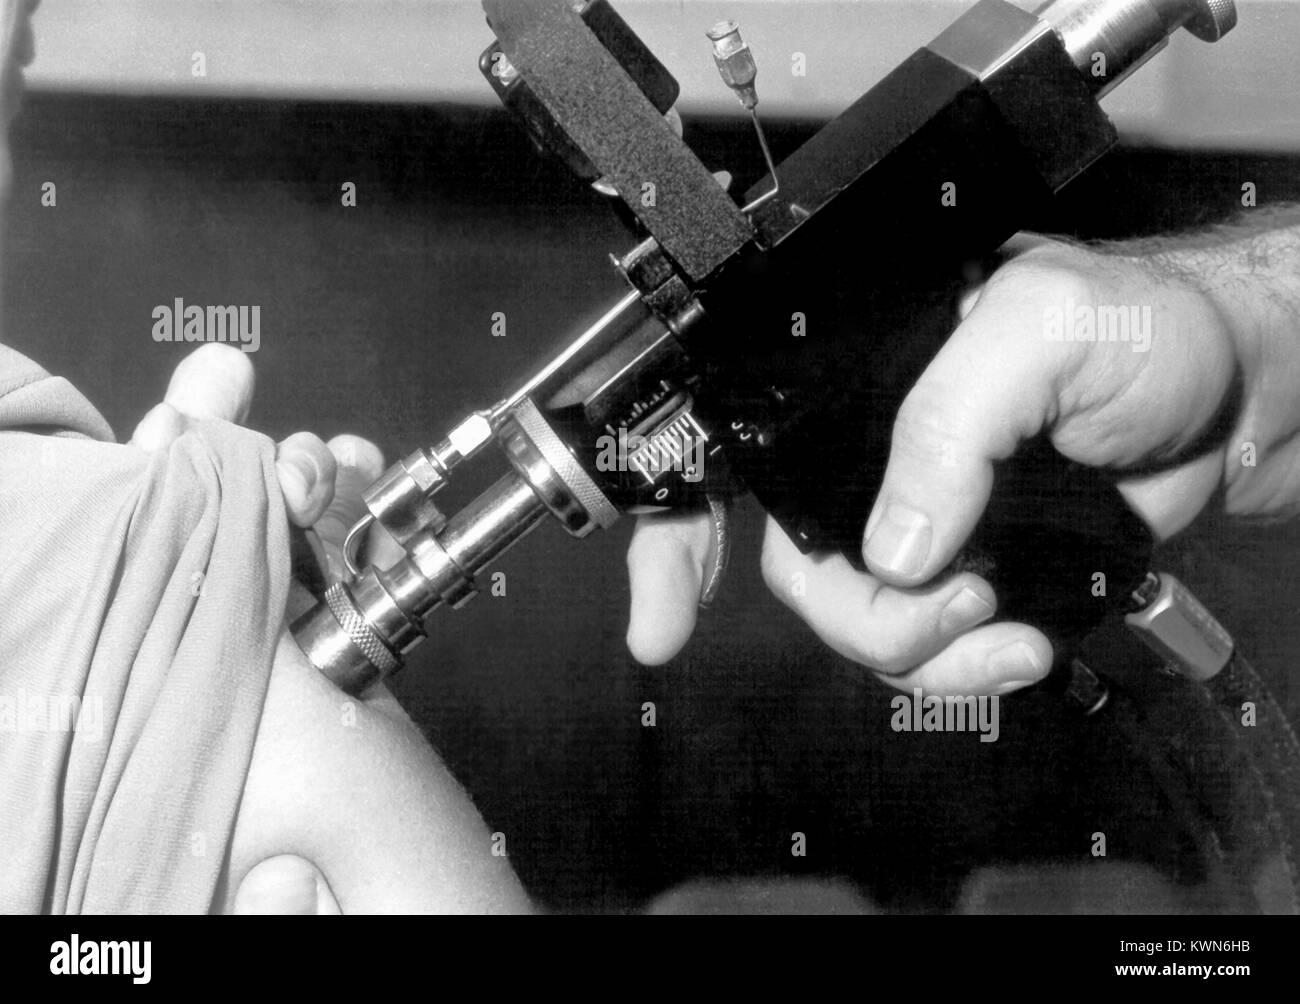 Questa fotografia mostra un medico utilizzando un iniettore a getto pistola durante un adulto programma di immunizzazione, 1958. Un iniettore a getto è un dispositivo che utilizza la pressione gassosa per la propulsione di farmaci o vaccini attraverso gli strati esterni della cute e nella sottostante i tessuti sottocutanei. Questa operazione viene realizzata senza l'uso di aghi. Immagine cortesia CDC. Foto Stock